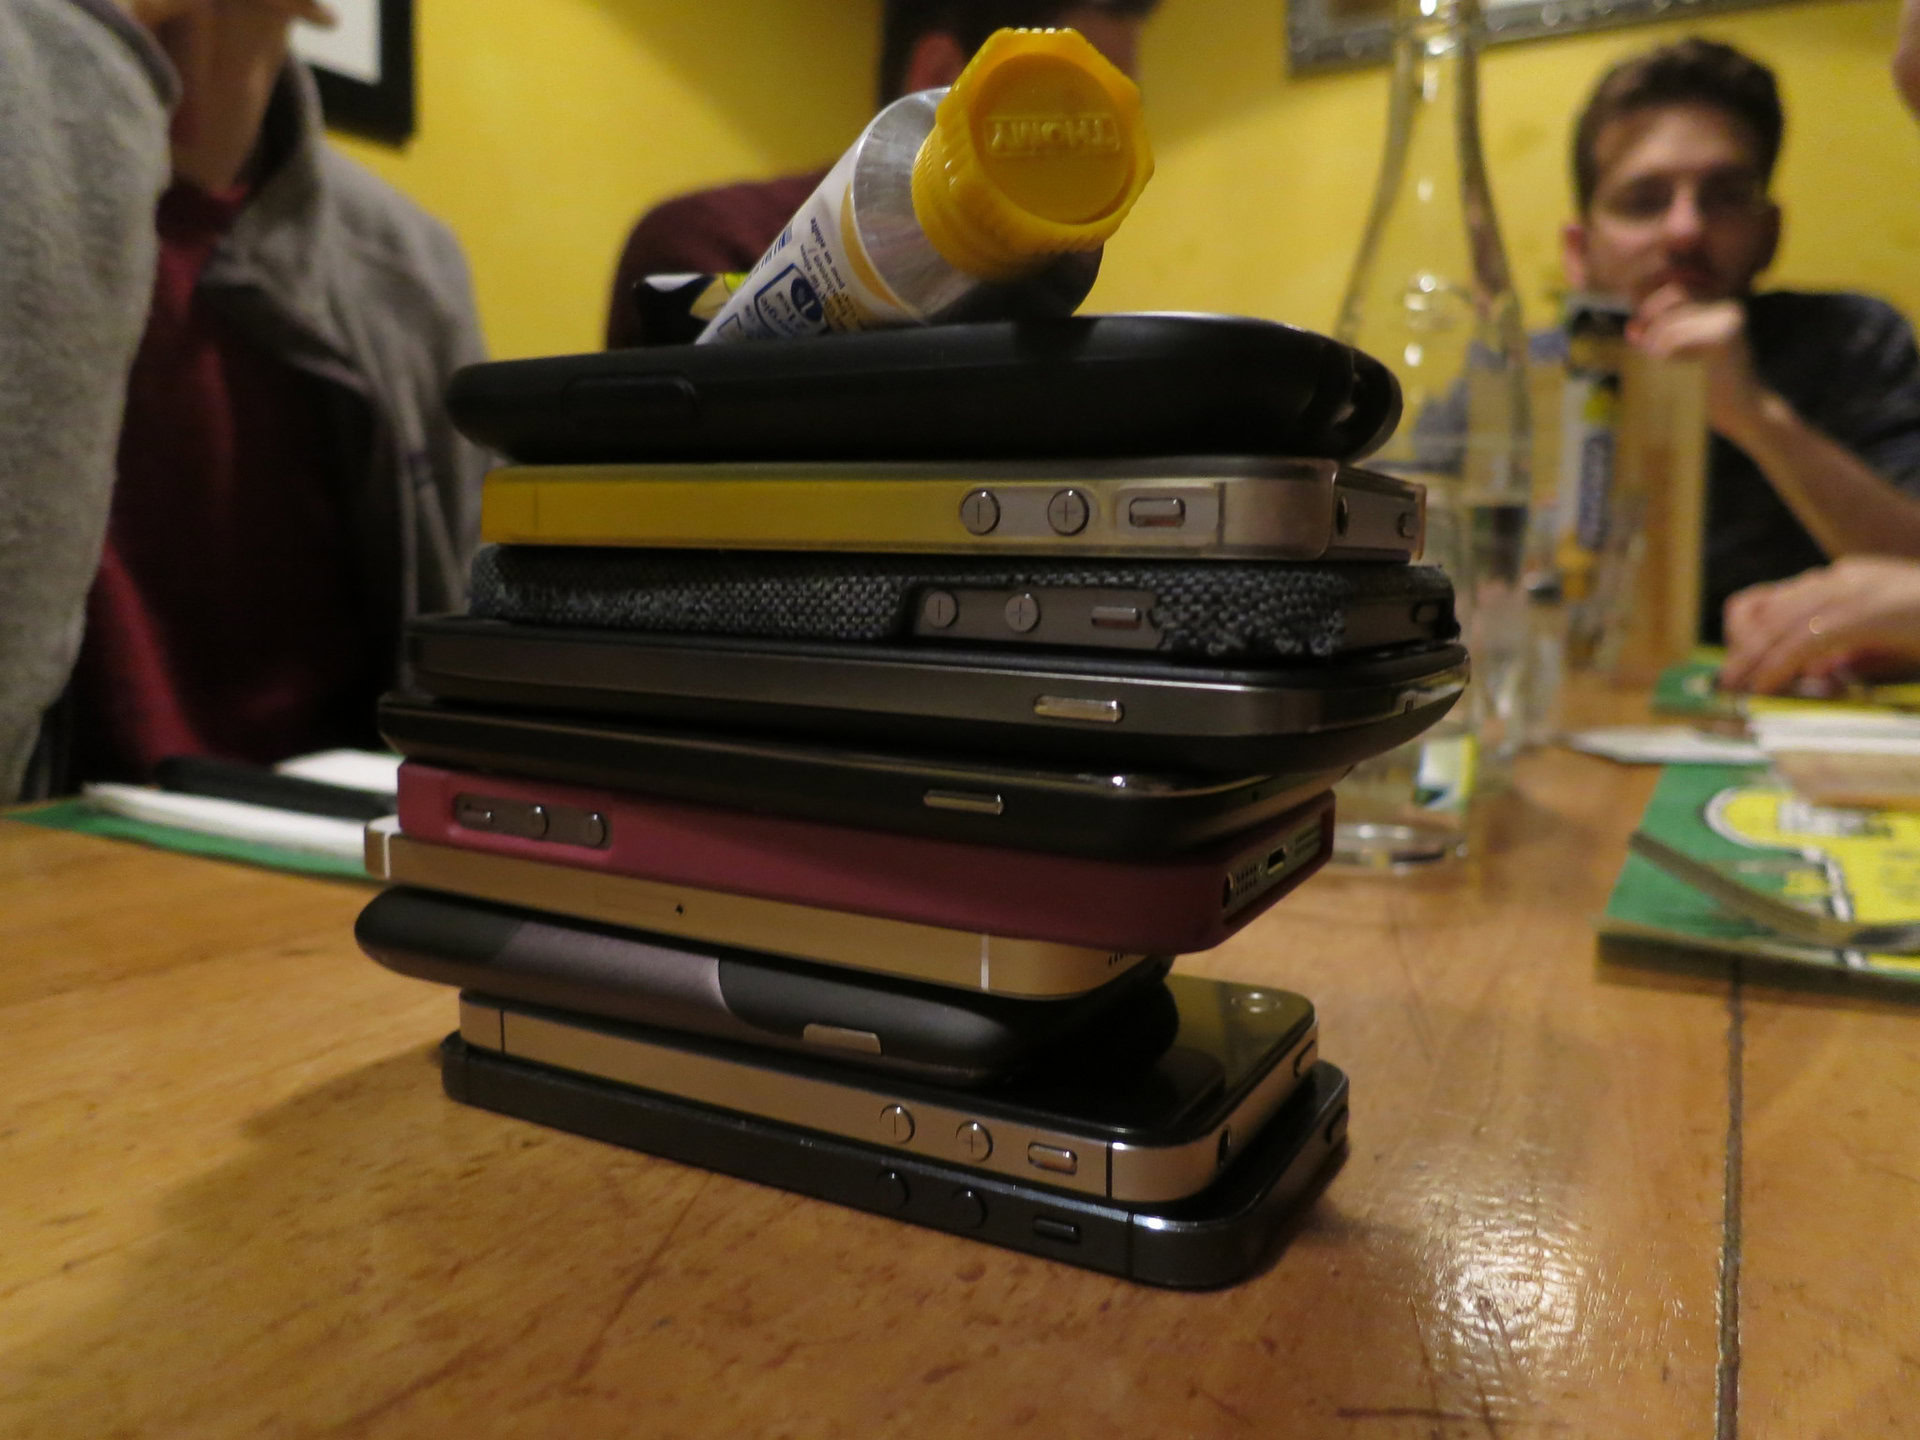 smartphones stacked